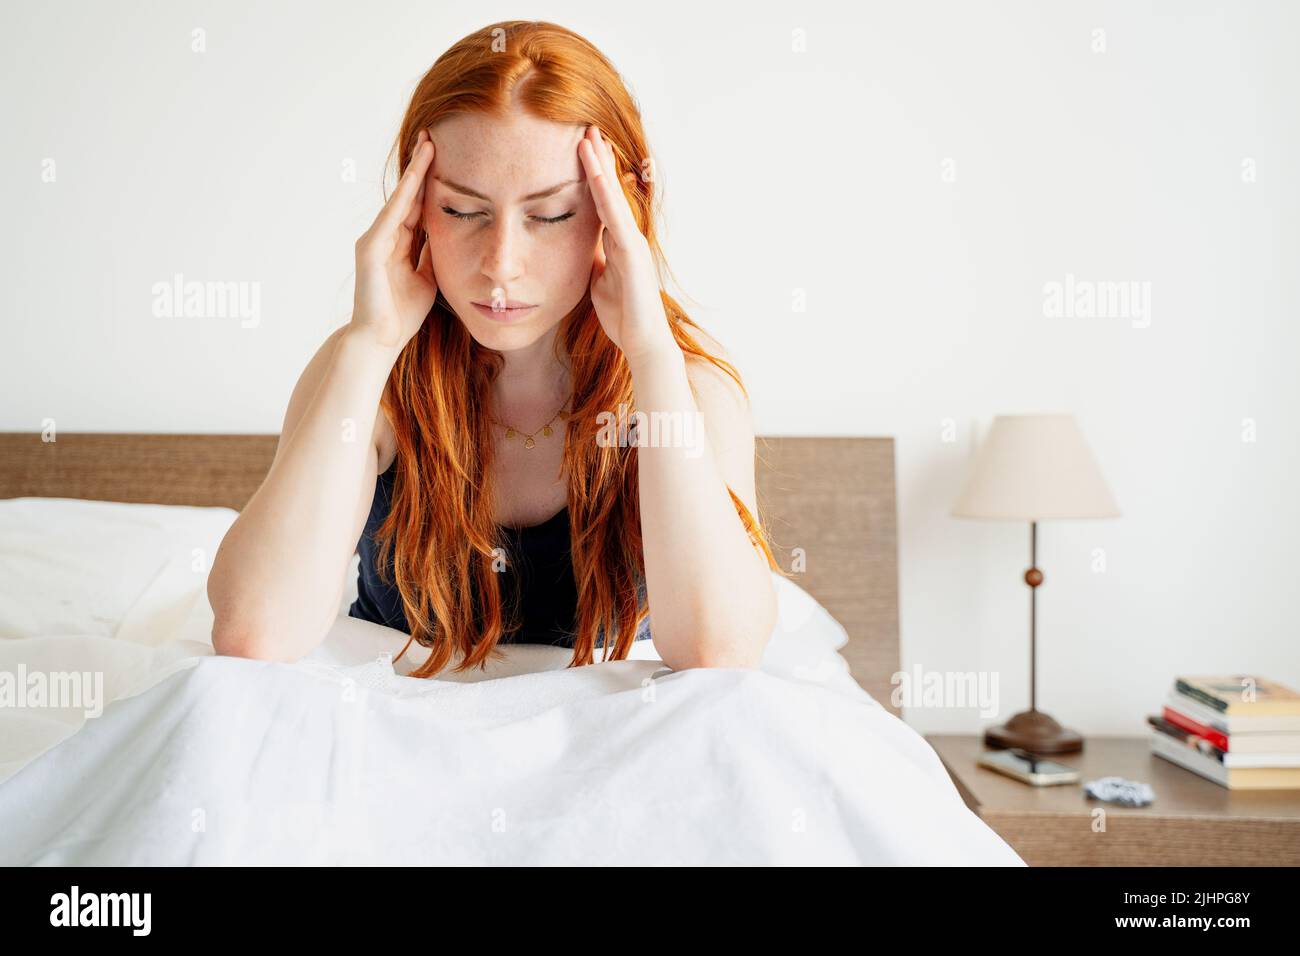 La mujer cansada acostada despierta en la cama sufre de insomnio dolor de cabeza Foto de stock